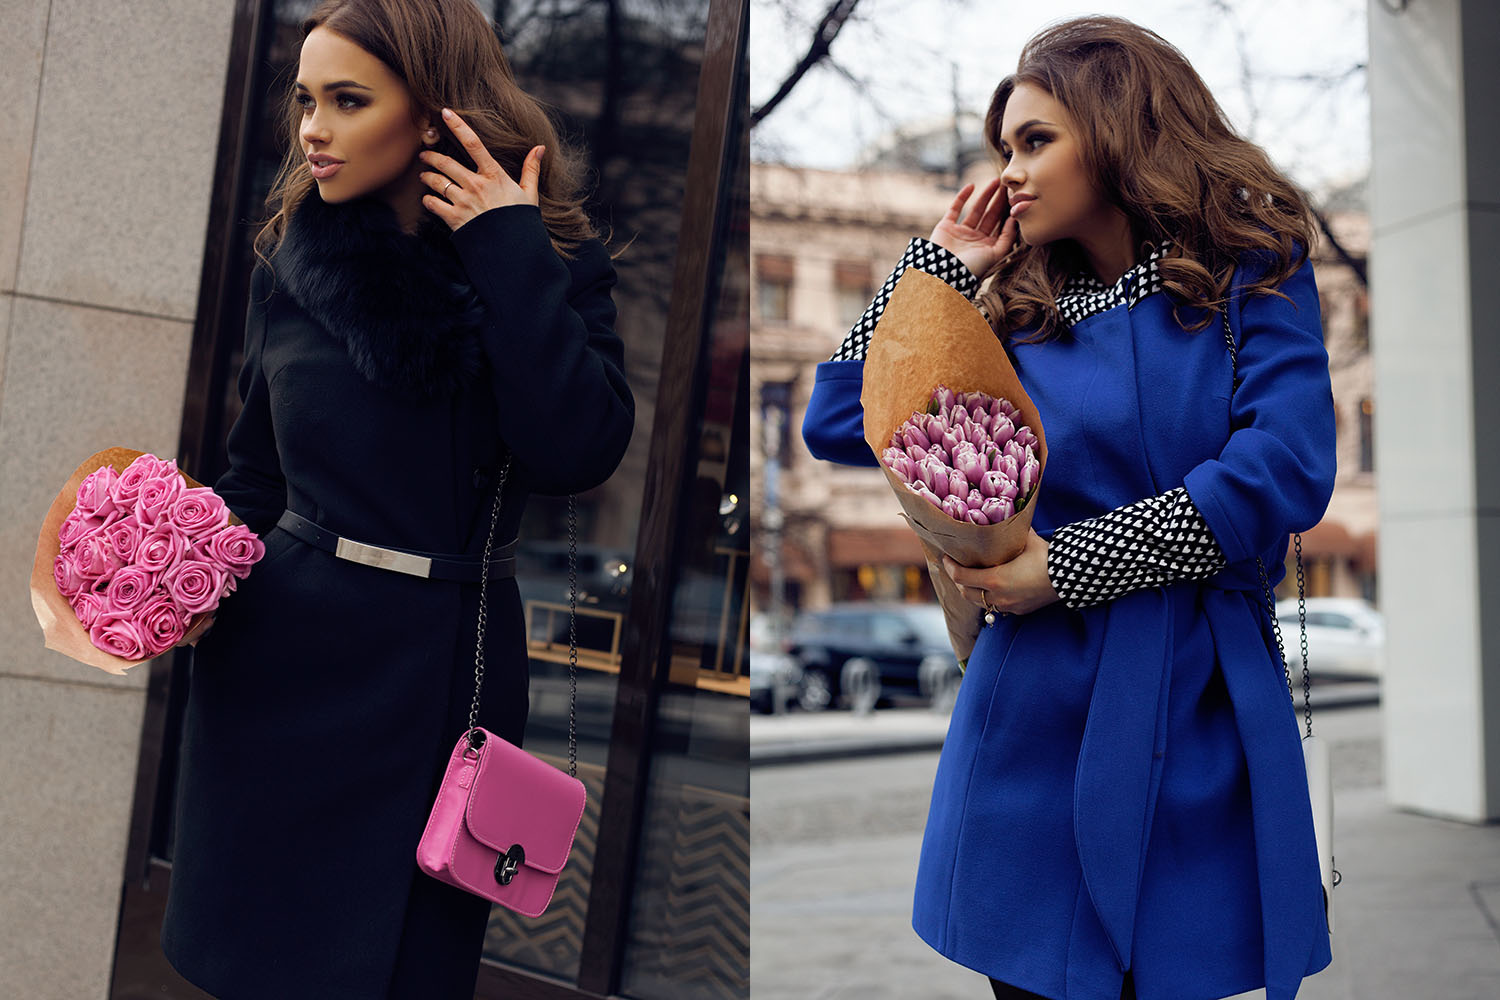 Максимально деловые, восторженно-романтические, в стиле «кэжуал» — в новой коллекции MALINA Fashion есть пальто на любой вкус. Лучше поторопиться, ведь все самое красивое, как известно, получают первые! Слева: пальто с натуральным мехом лисы <price>12 500 руб</price>., справа: пальто <price>11 500 руб.</price>